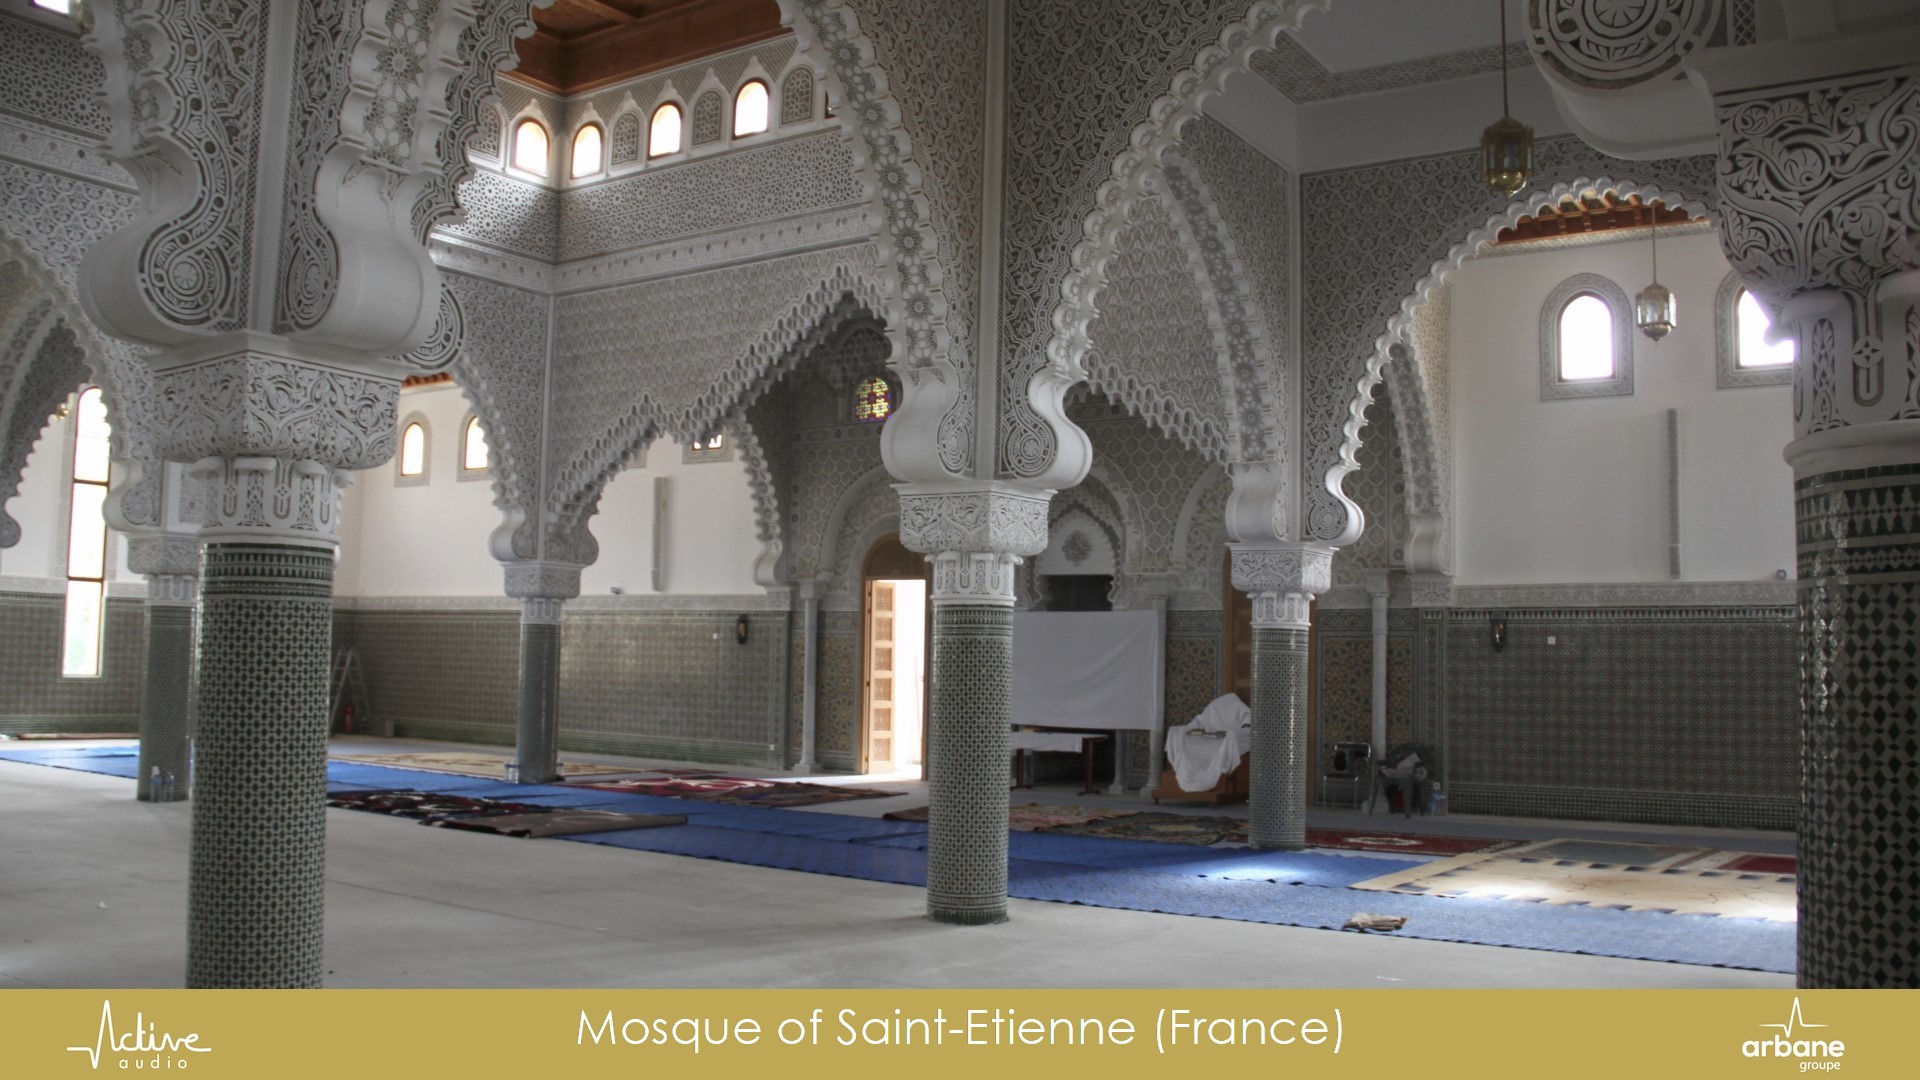 Saint-Etienne mosque, France